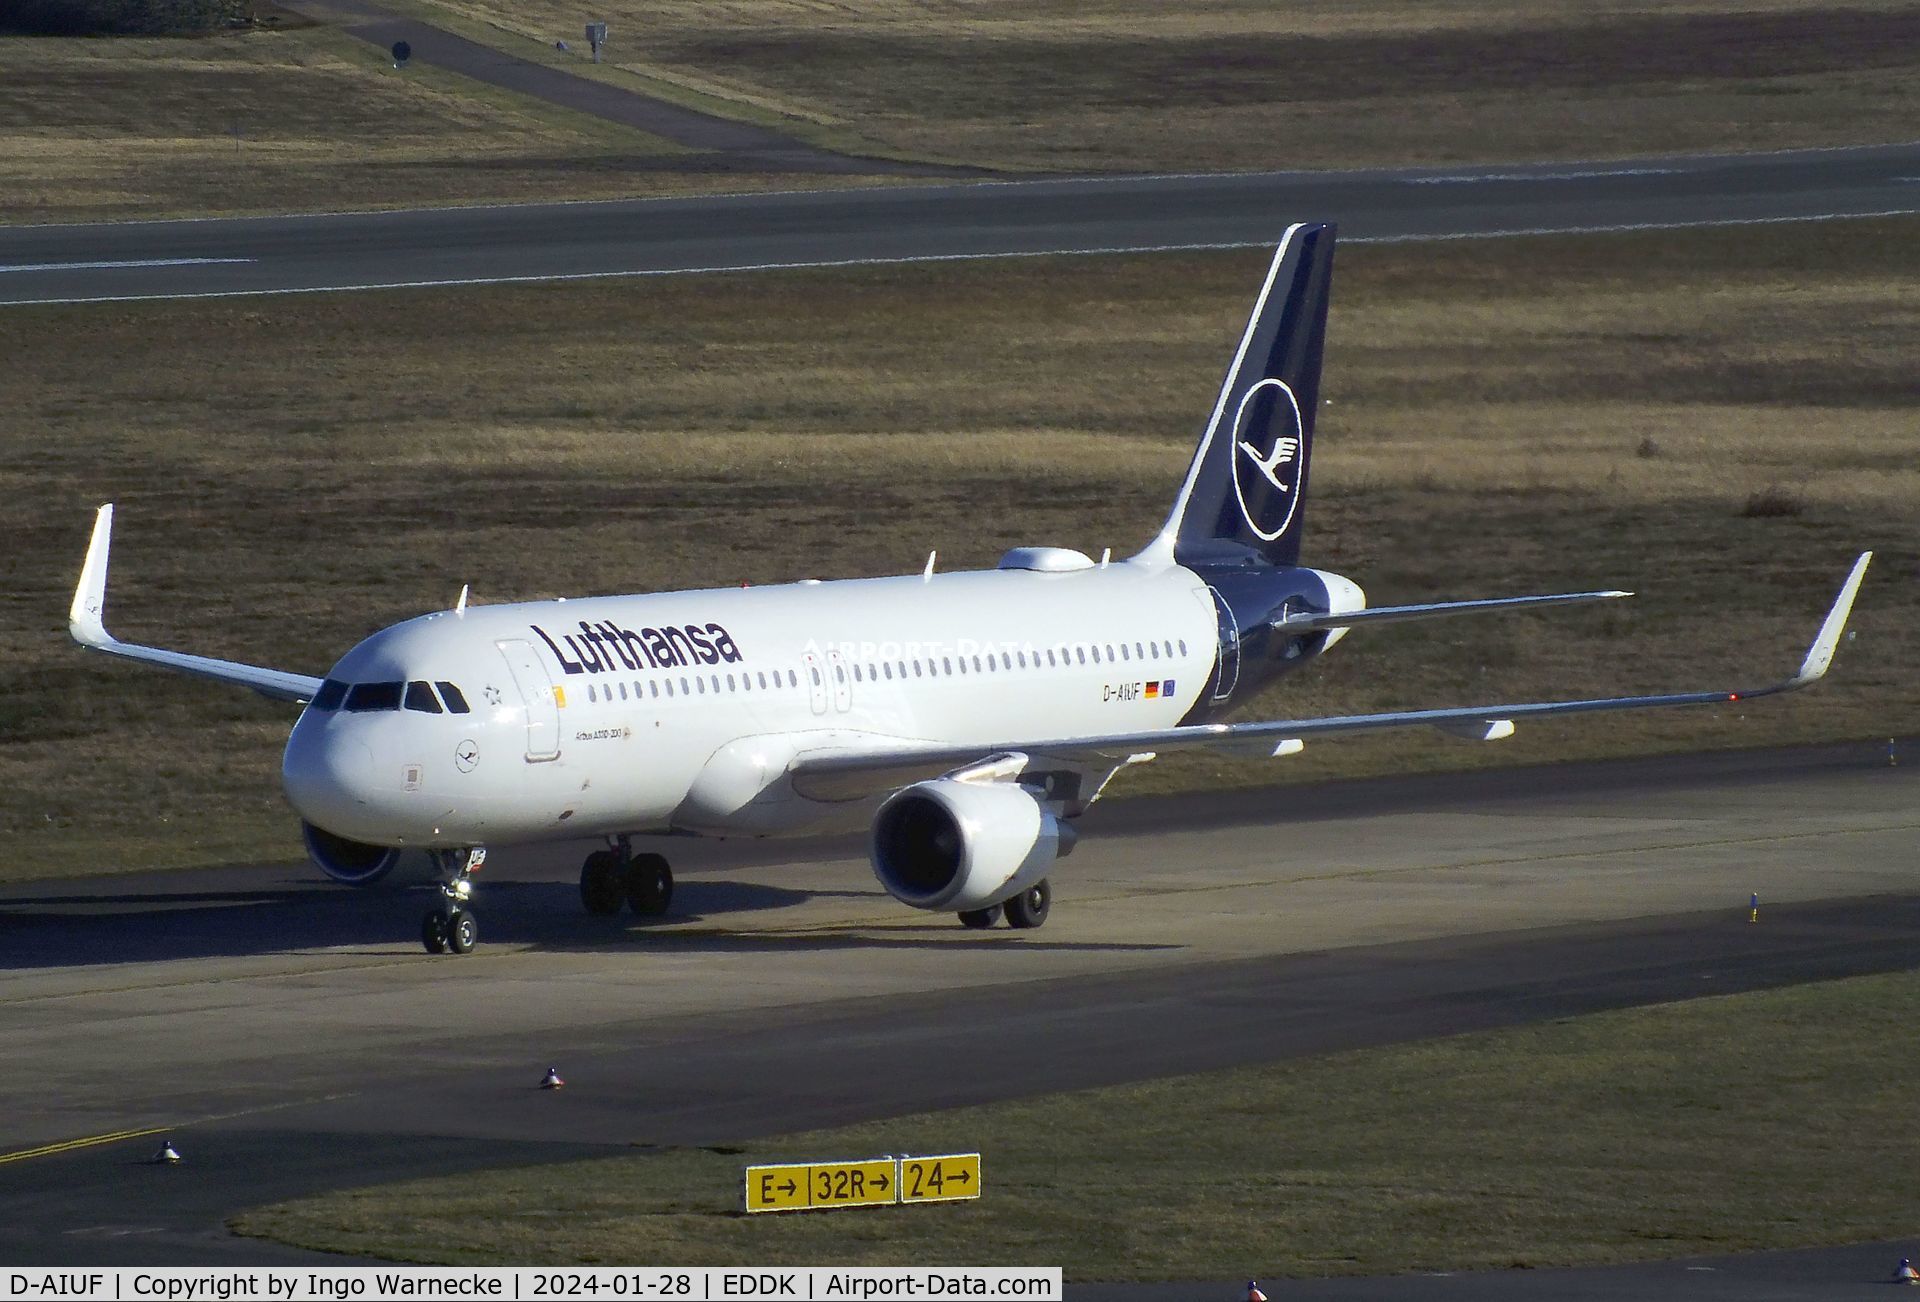 D-AIUF, 2014 Airbus A320-214 C/N 6141, Airbus A320-214 of Lufthansa at Köln/Bonn (Cologne / Bonn) airport